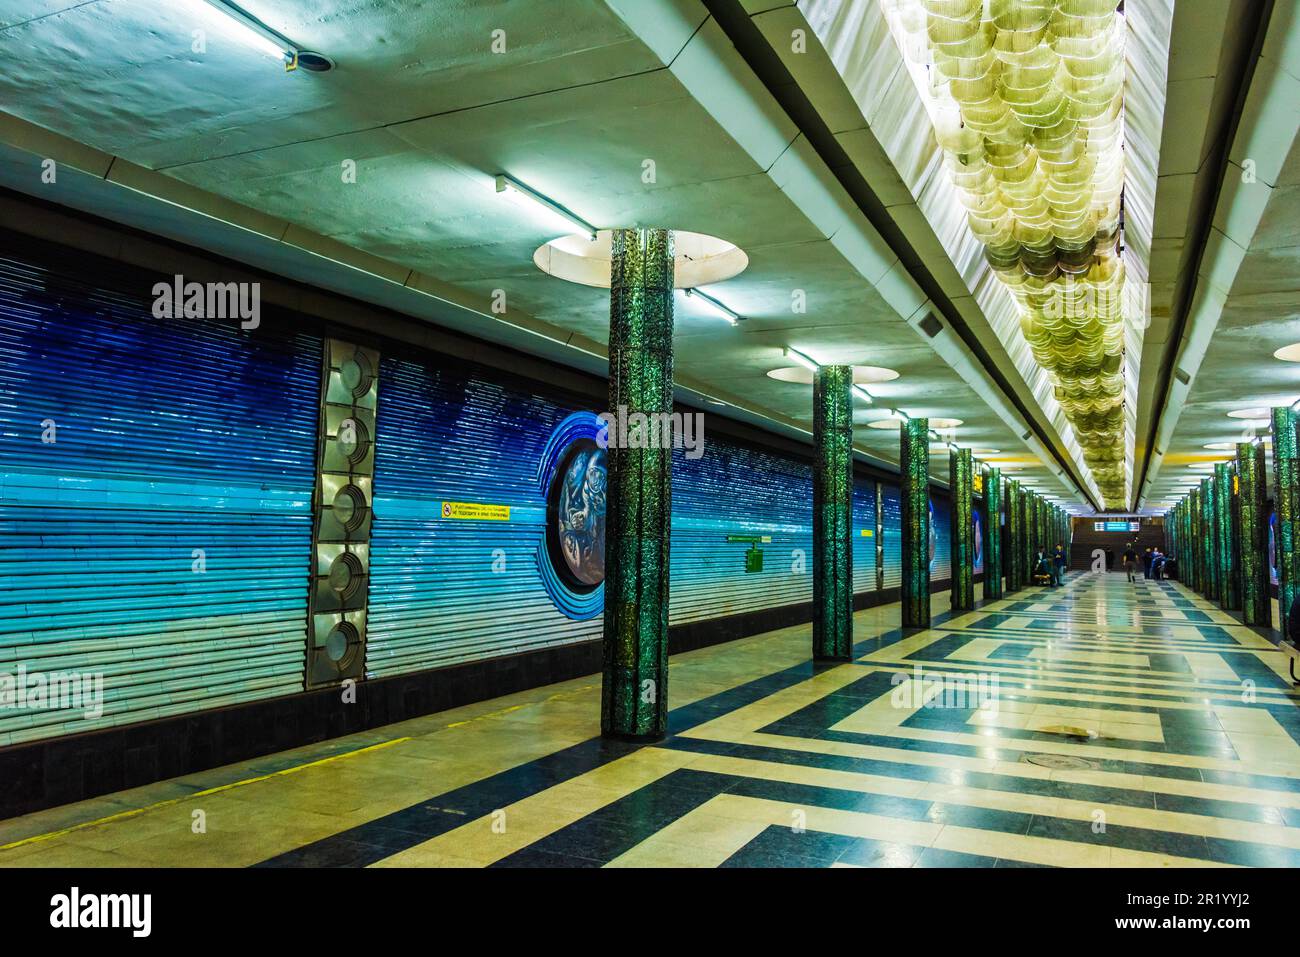 TASHKENT, OUZBÉKISTAN - 27 avril 2019 : intérieur de la station de métro de Tashkent, Ouzbékistan Banque D'Images